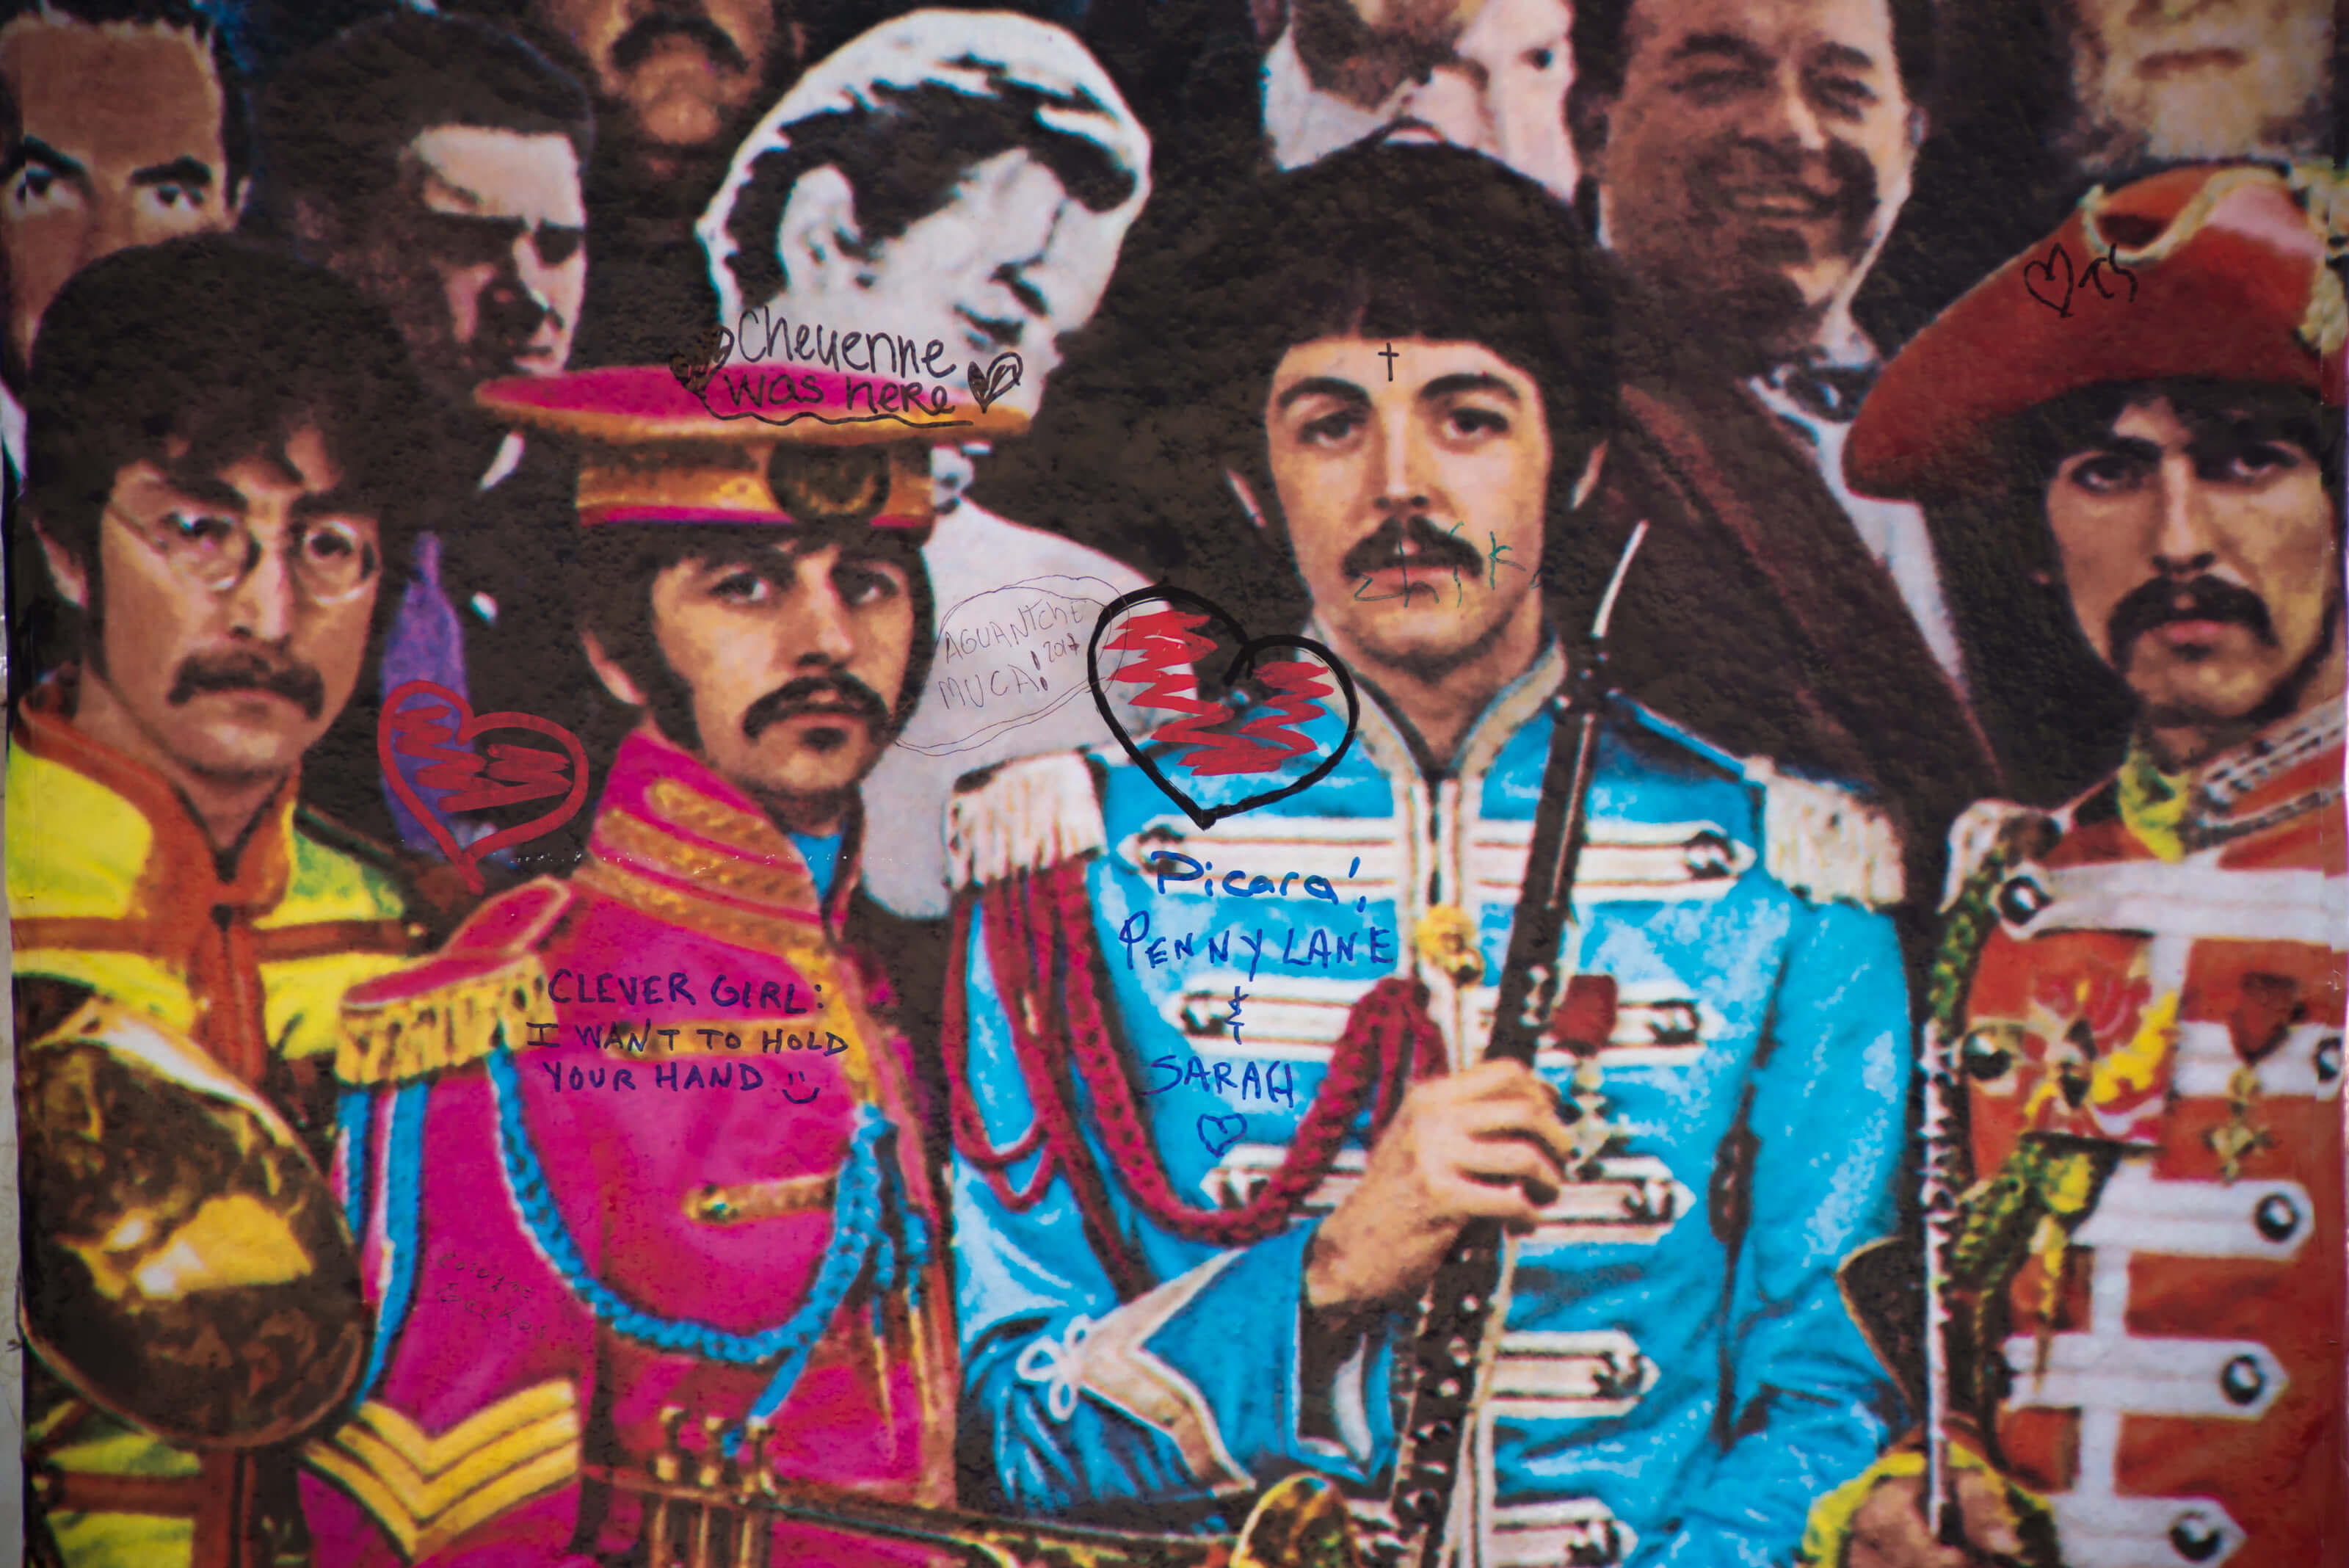 John Lennon Mengatakan 'Sgt. Pepper' 'Tidak Kemana-mana'